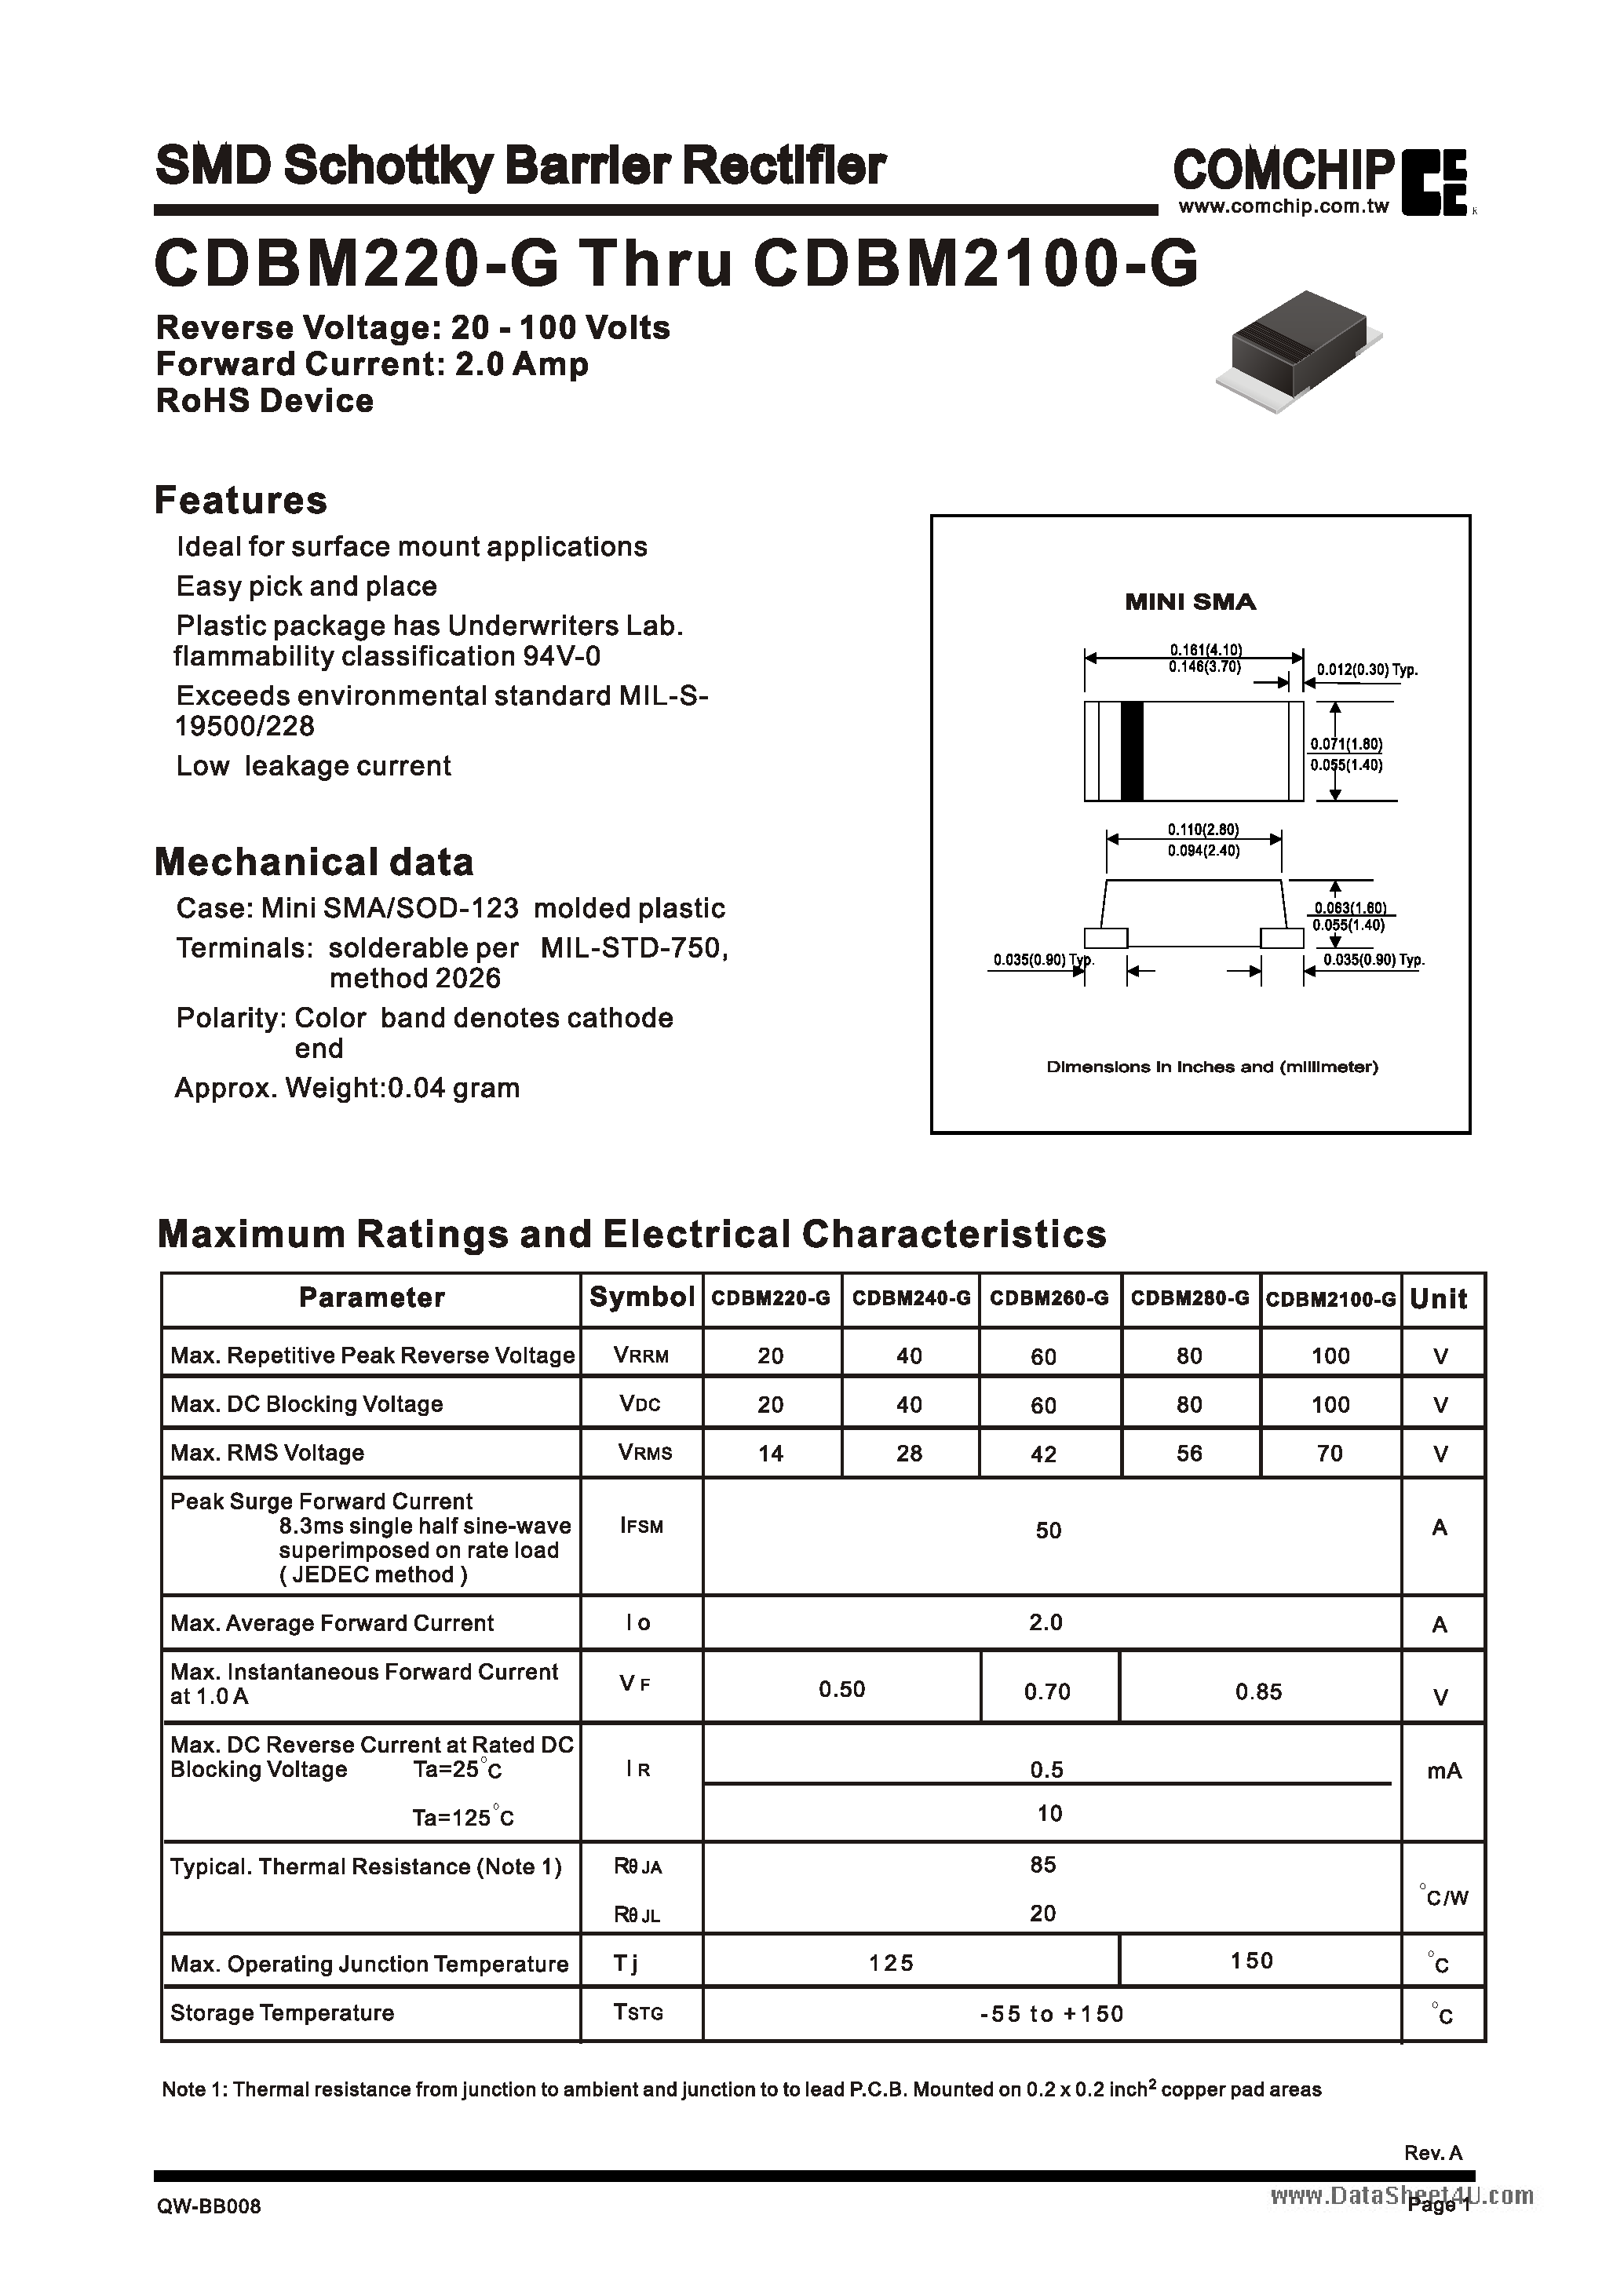 Datasheet CDBM2100-G - (CDBM220-G - CDBM2100-G) SMD Schottky Barrier Rectifiers page 1